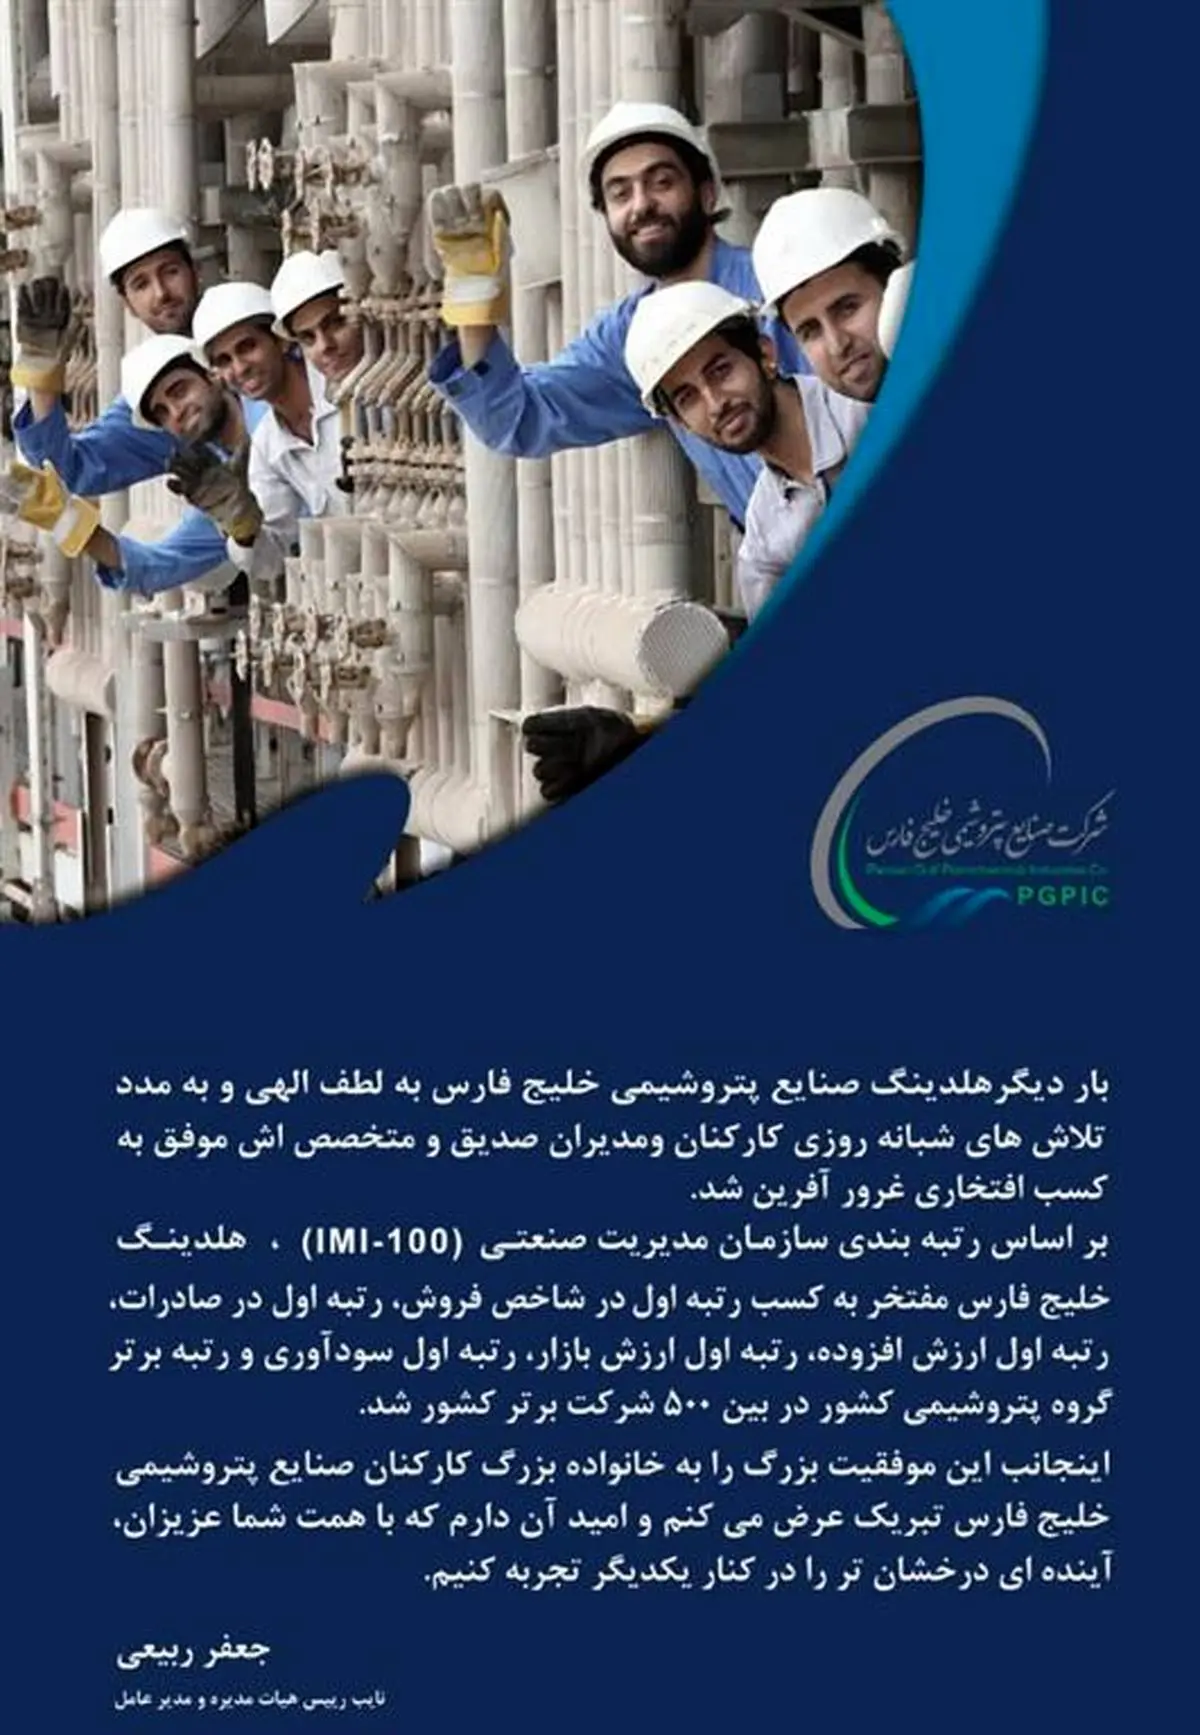 پیام تبریک جعفر ربیعی به خانواده بزرگ کارکنان صنایع پتروشیمی خلیج فارس